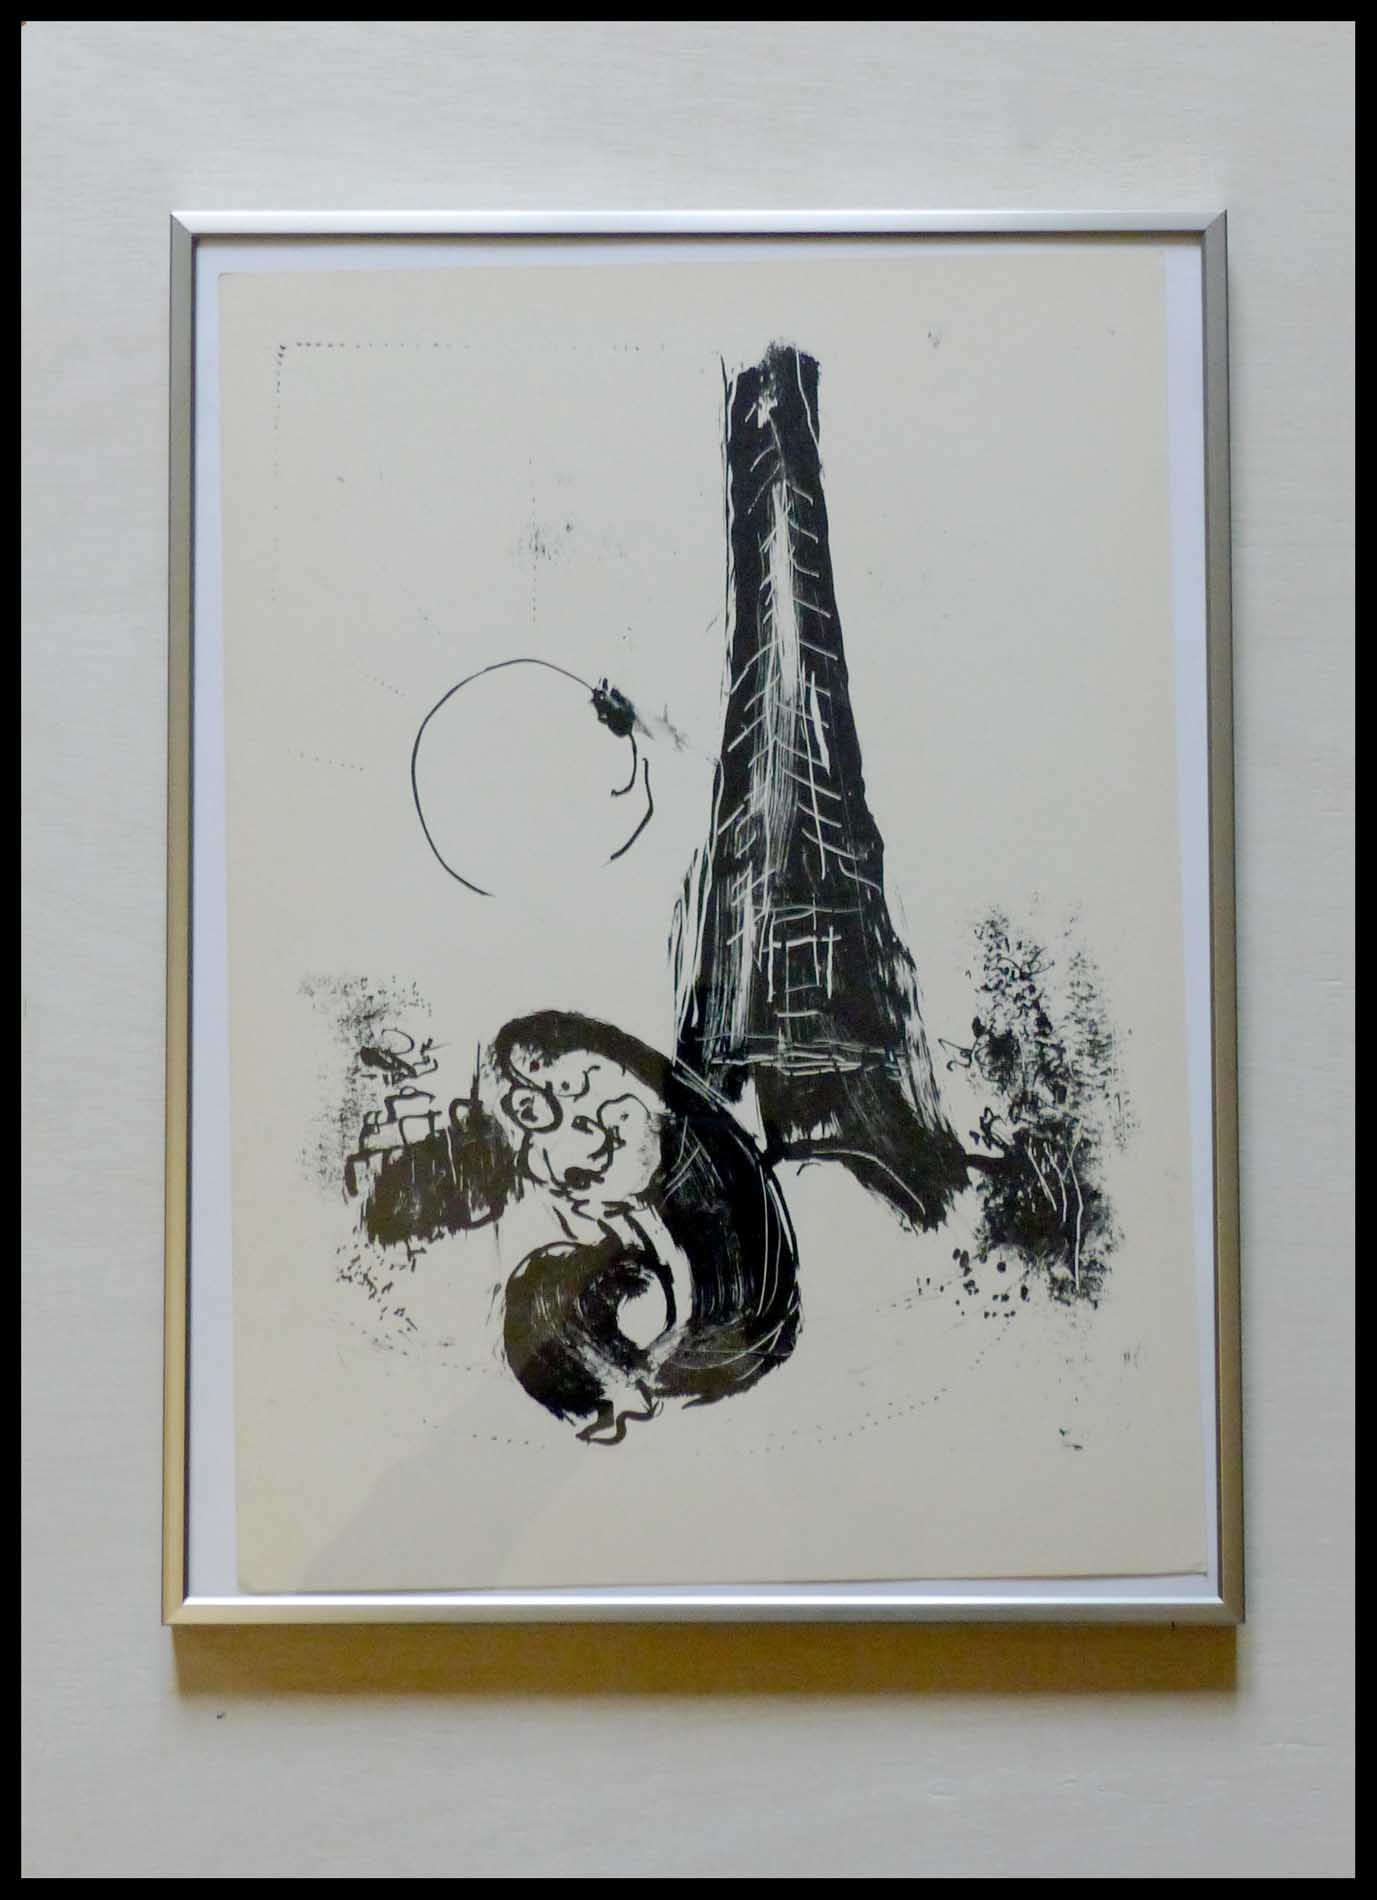 Marc CHAGALL Mère et enfant 38.4 x 27.6 cm condition A+ Paris Fantastique DLM 1954 Papier Vélin 2500 exemplaires